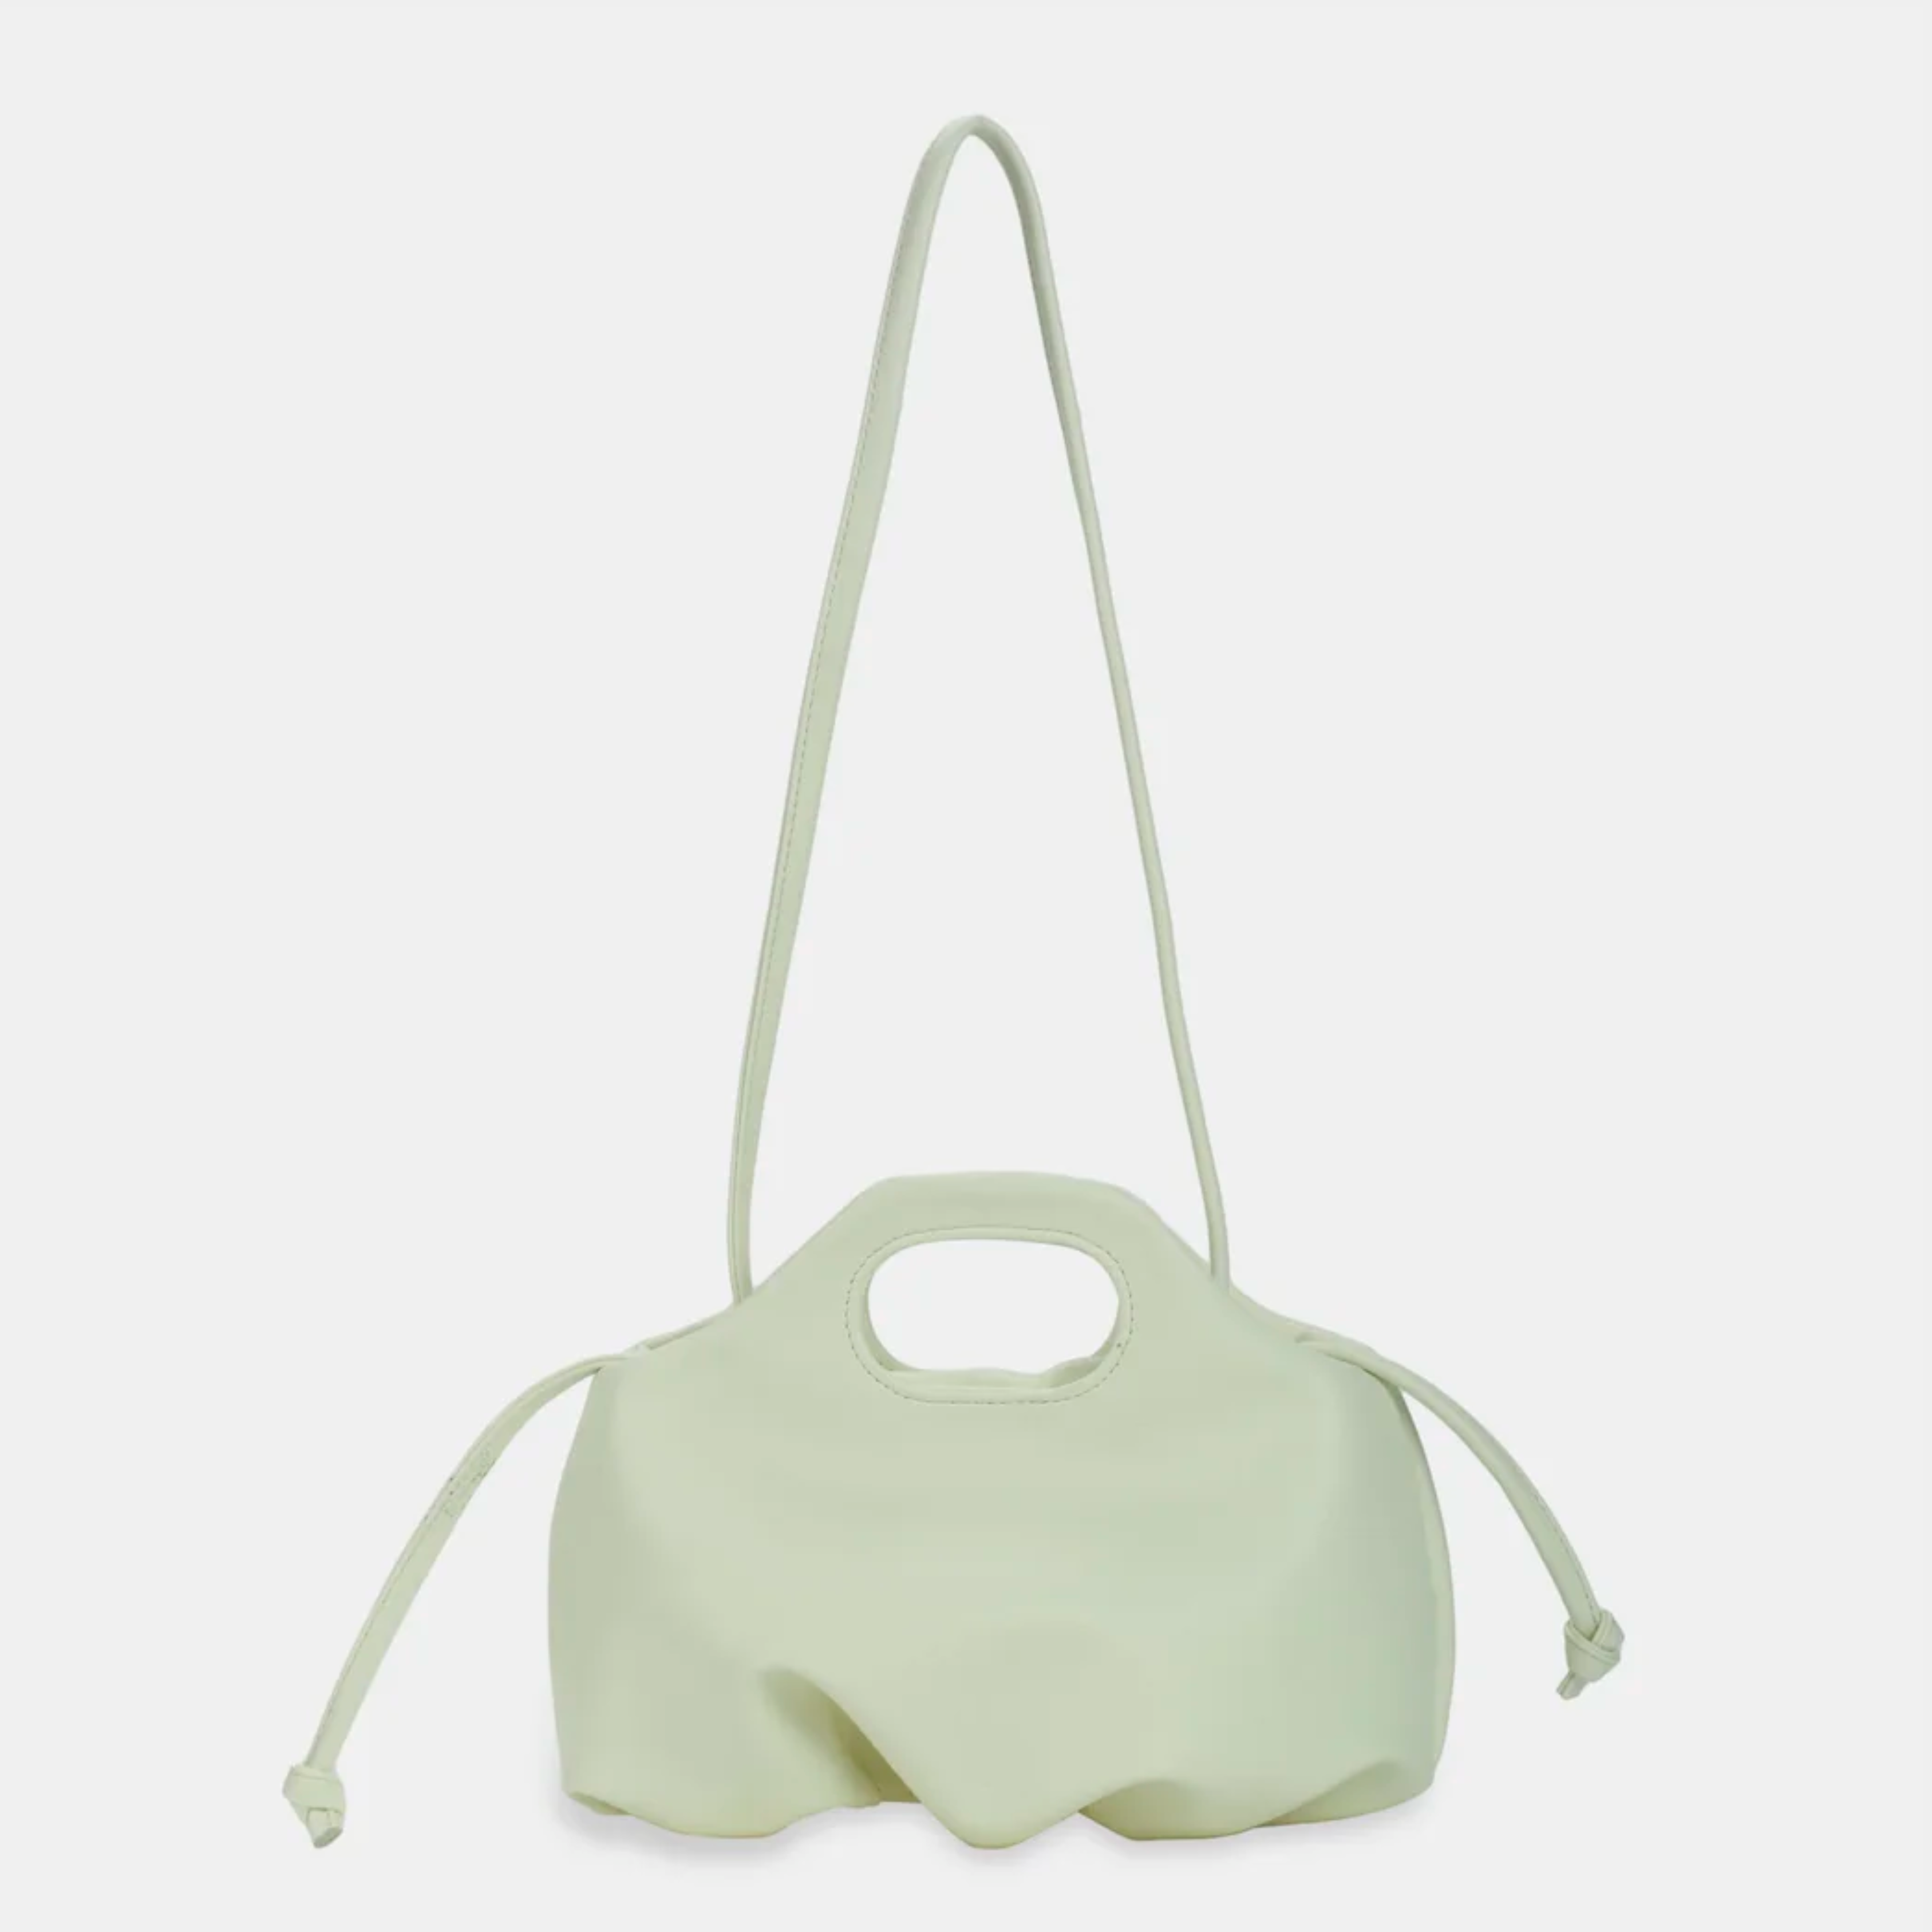 Flower M (medium) handbag in white color